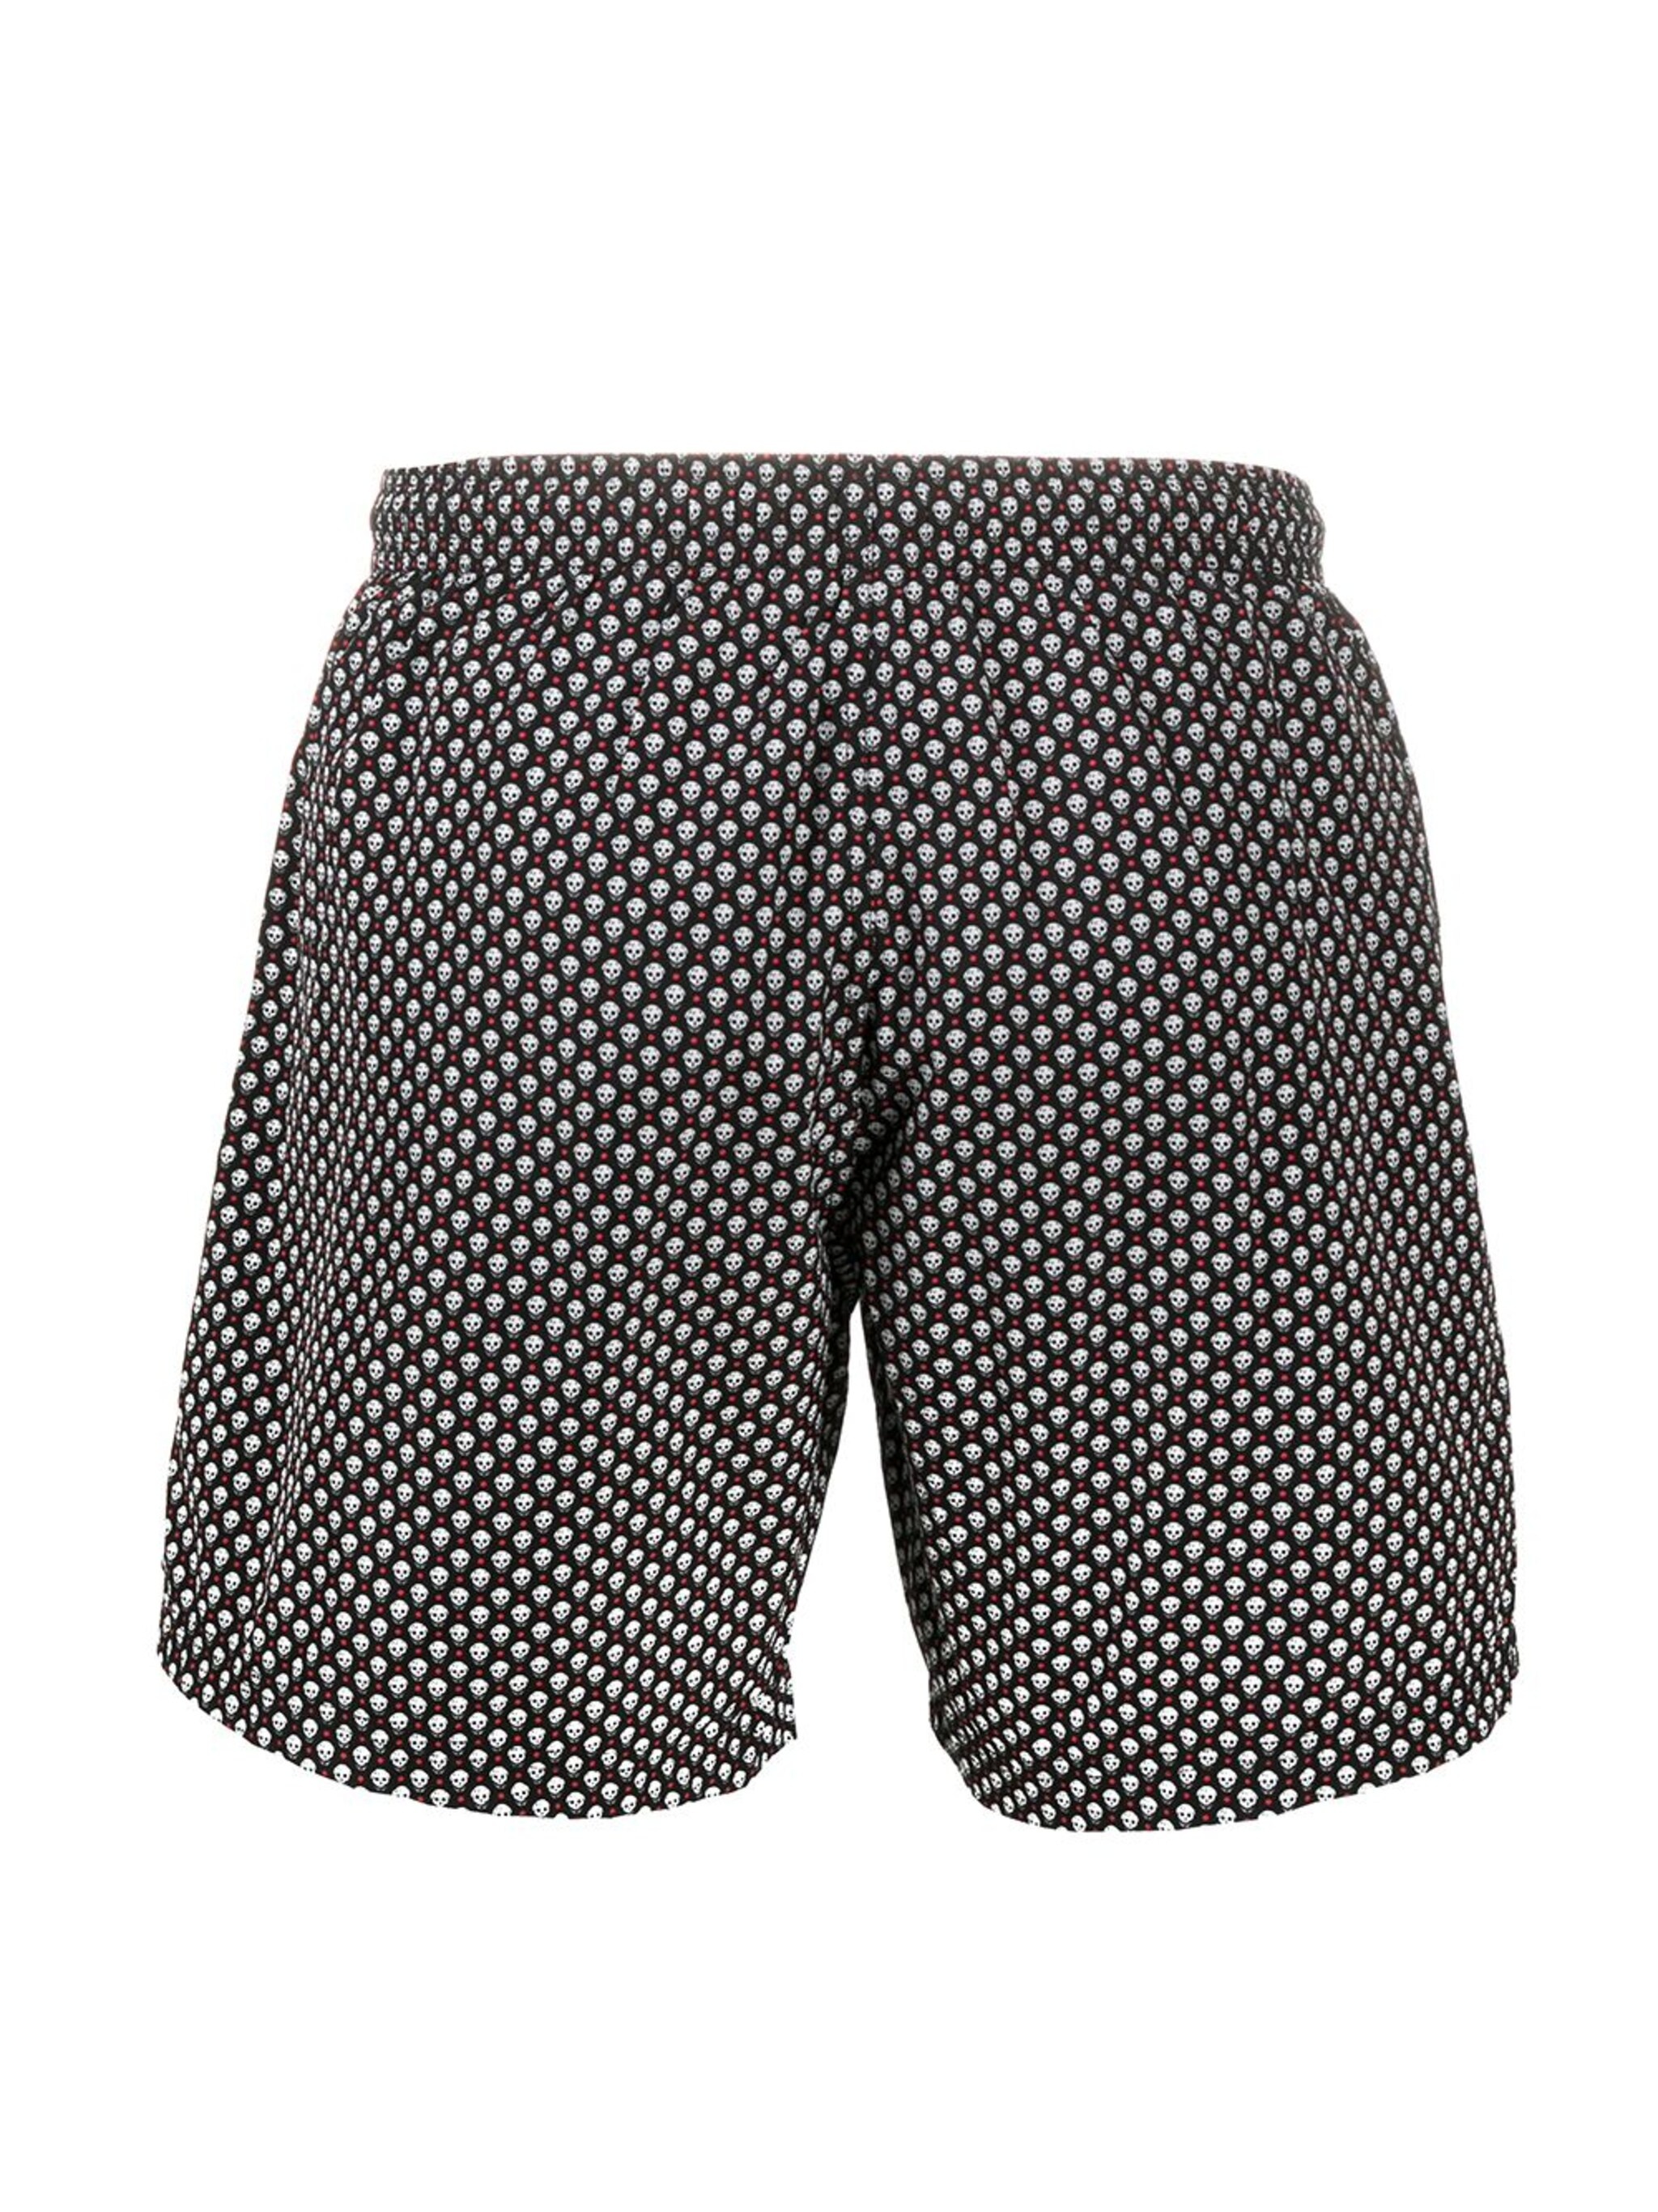 skull pattern swim shorts - 2